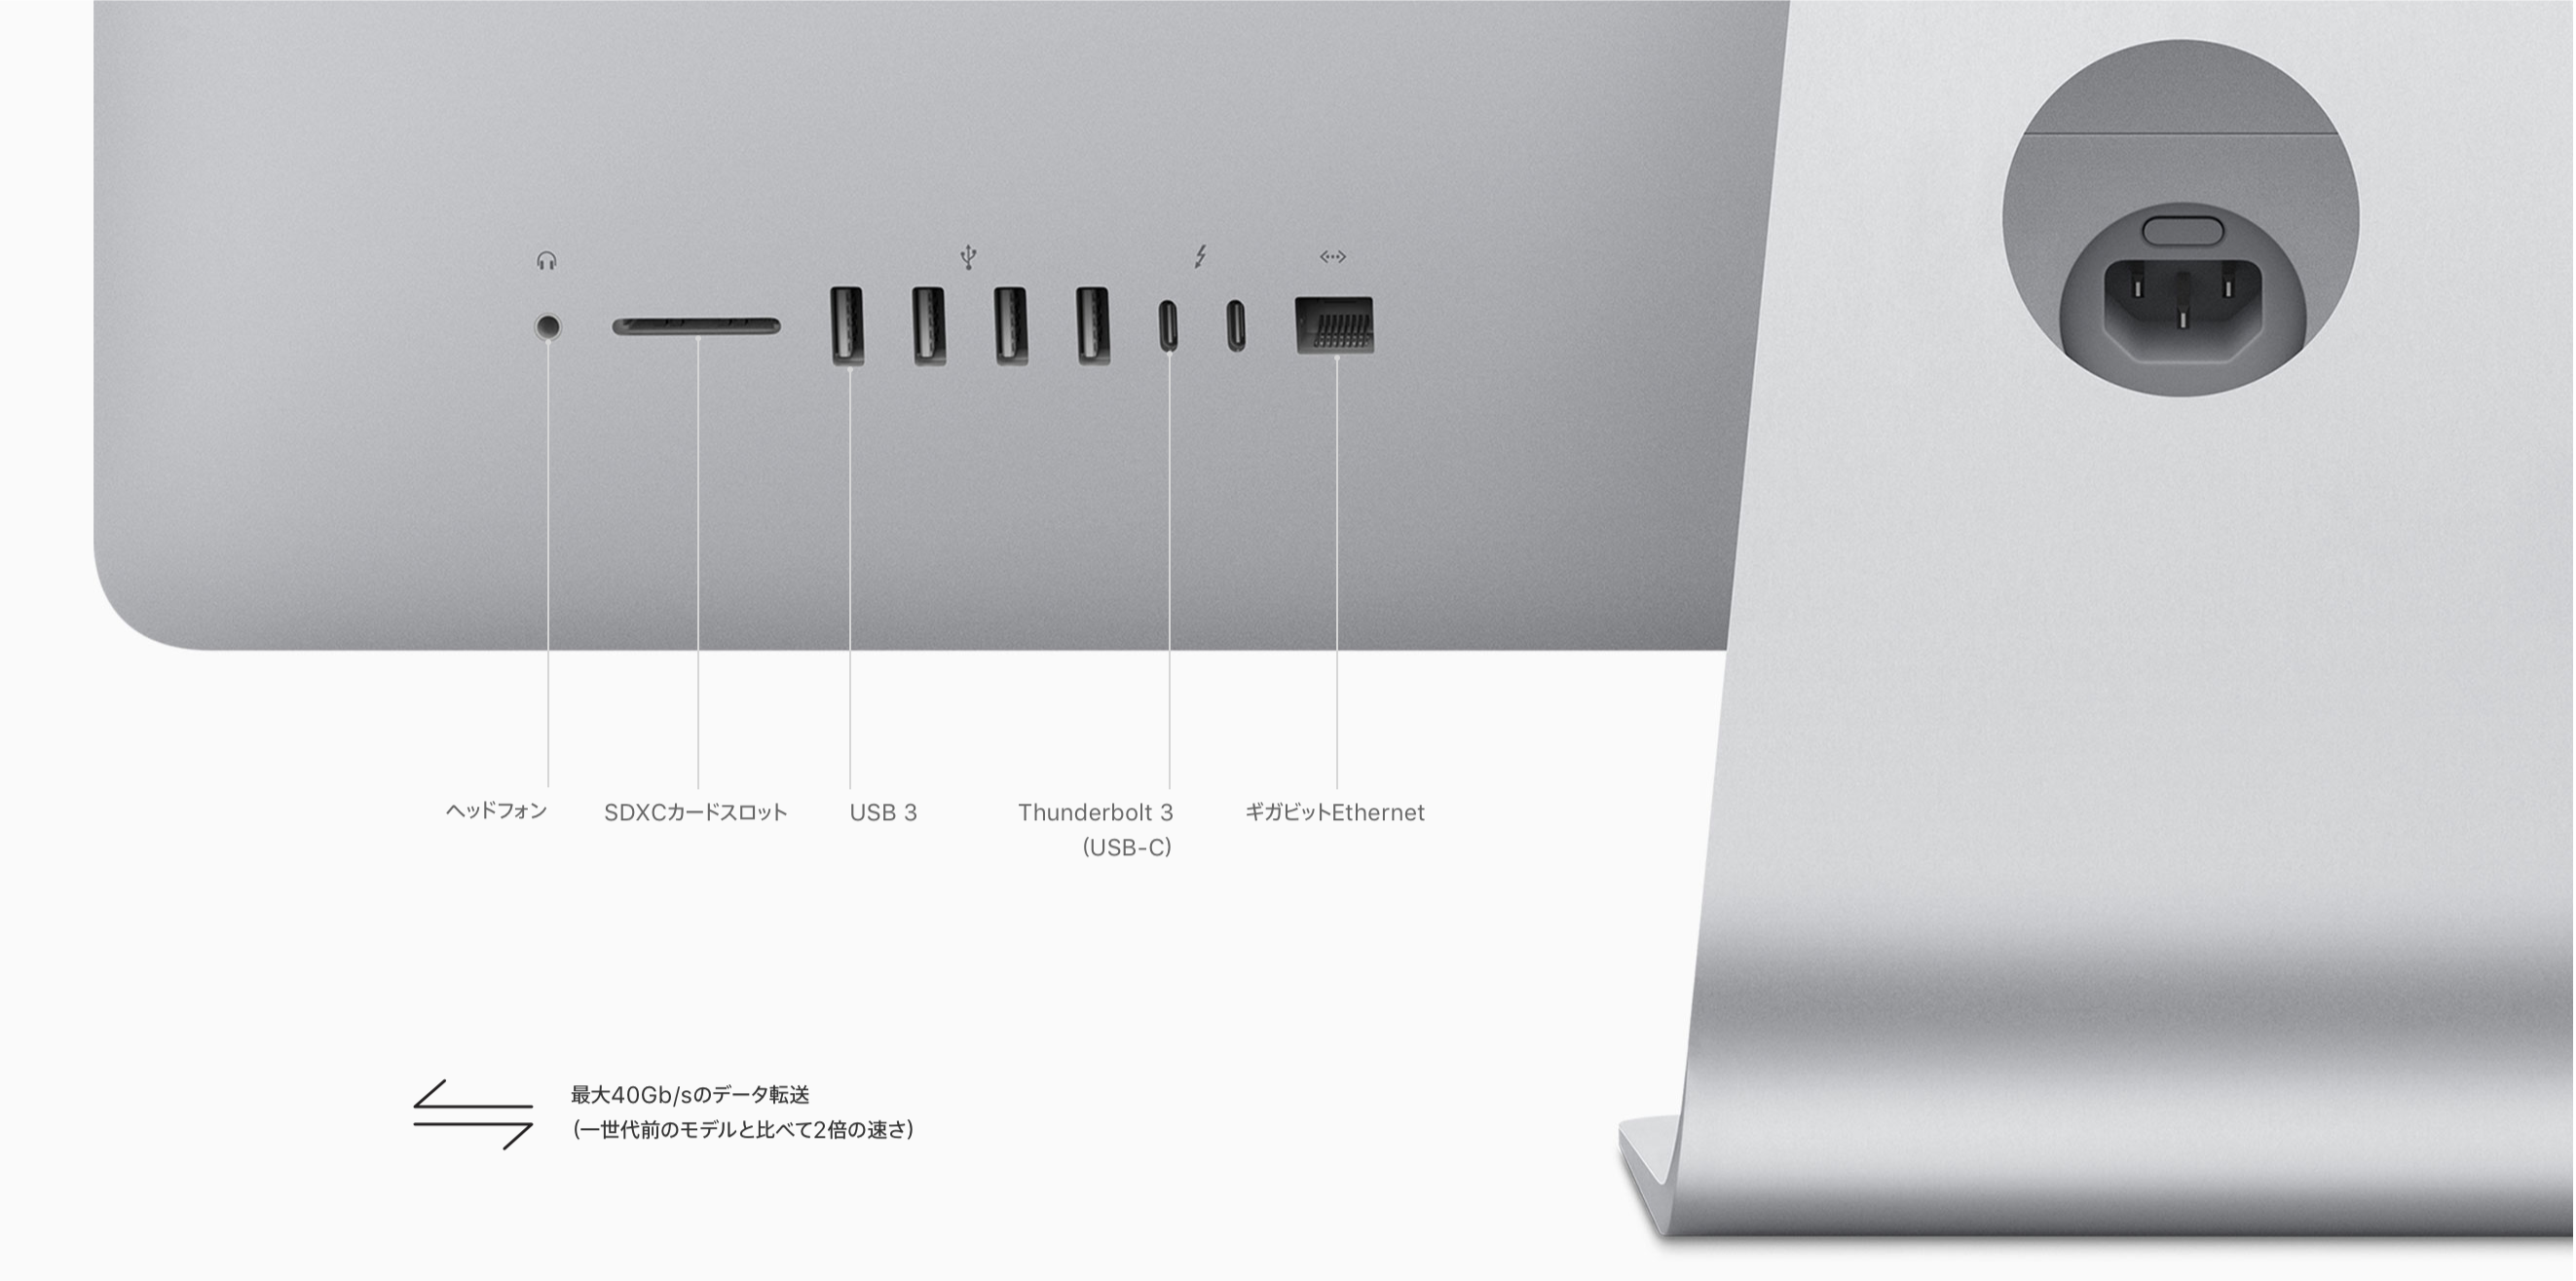 iMac Retina 5K, 27-inch, 2017